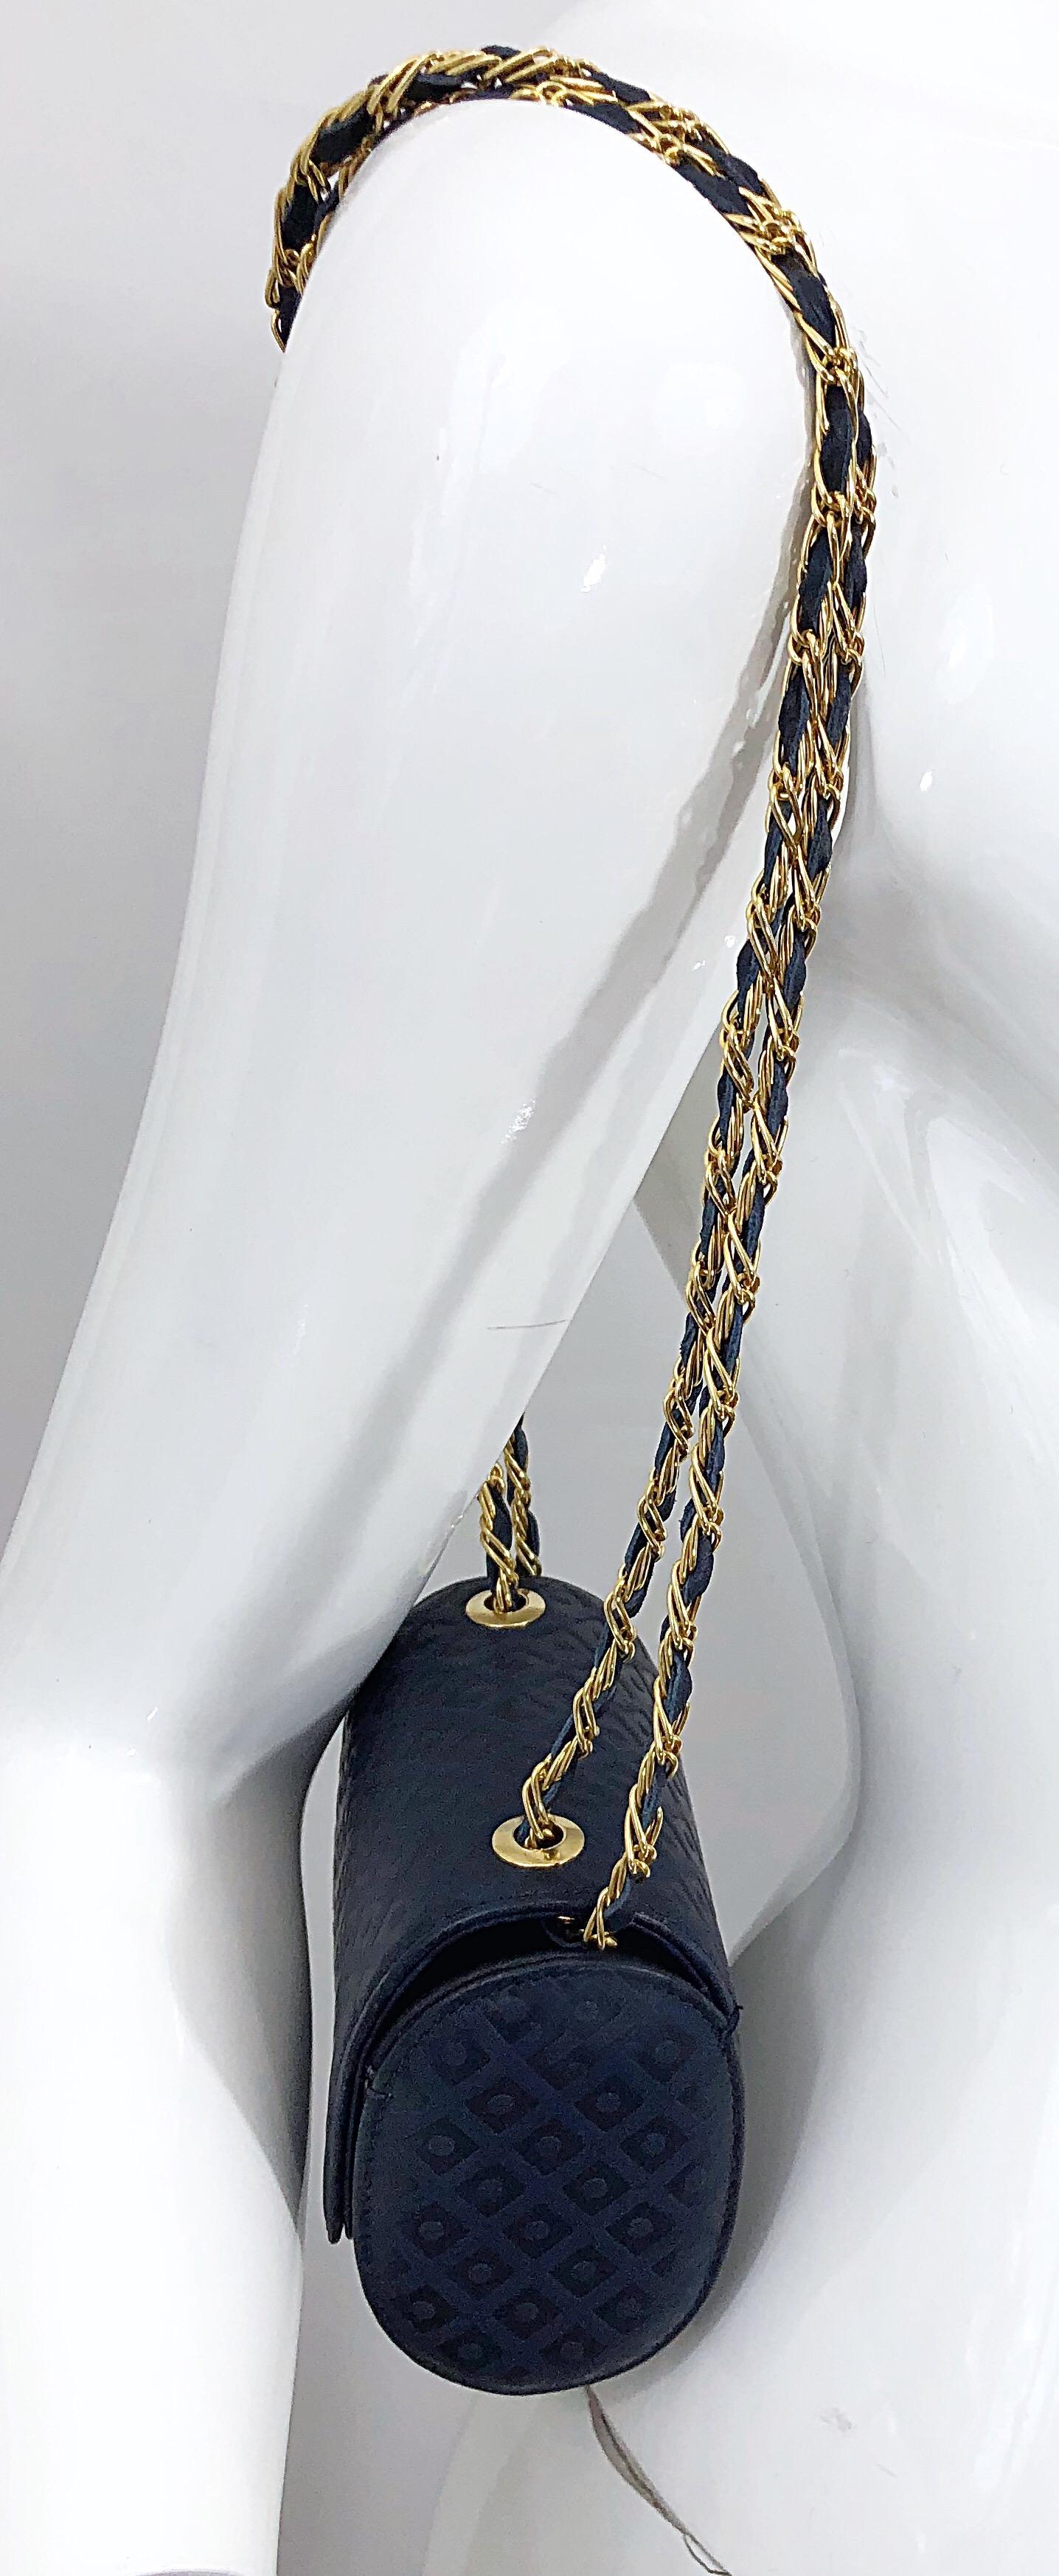 Schicke LUC BENOIT marineblaue, geprägte Leder-Kreuzledertasche / Handtasche! Mit einer goldenen Metallkette, die mit passendem navyblauem Leder verflochten ist. Der Schnappverschluss hält alles sicher. Der Trageriemen kann verdoppelt werden, um die